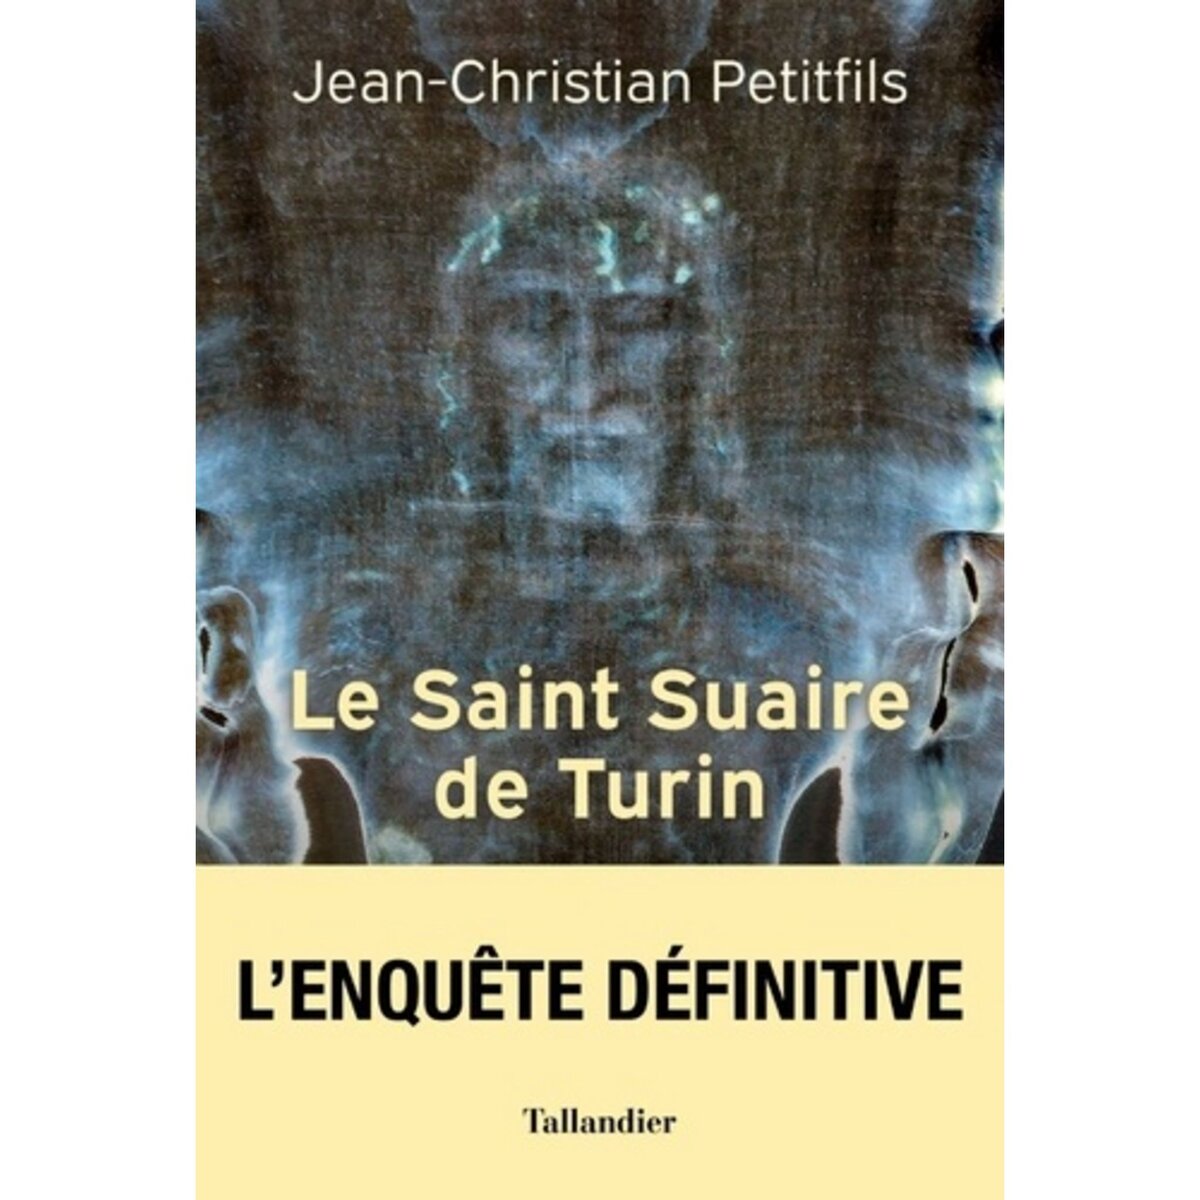  LE SAINT SUAIRE DE TURIN. TEMOIN DE LA PASSION DE JESUS-CHRIST, Petitfils Jean-Christian